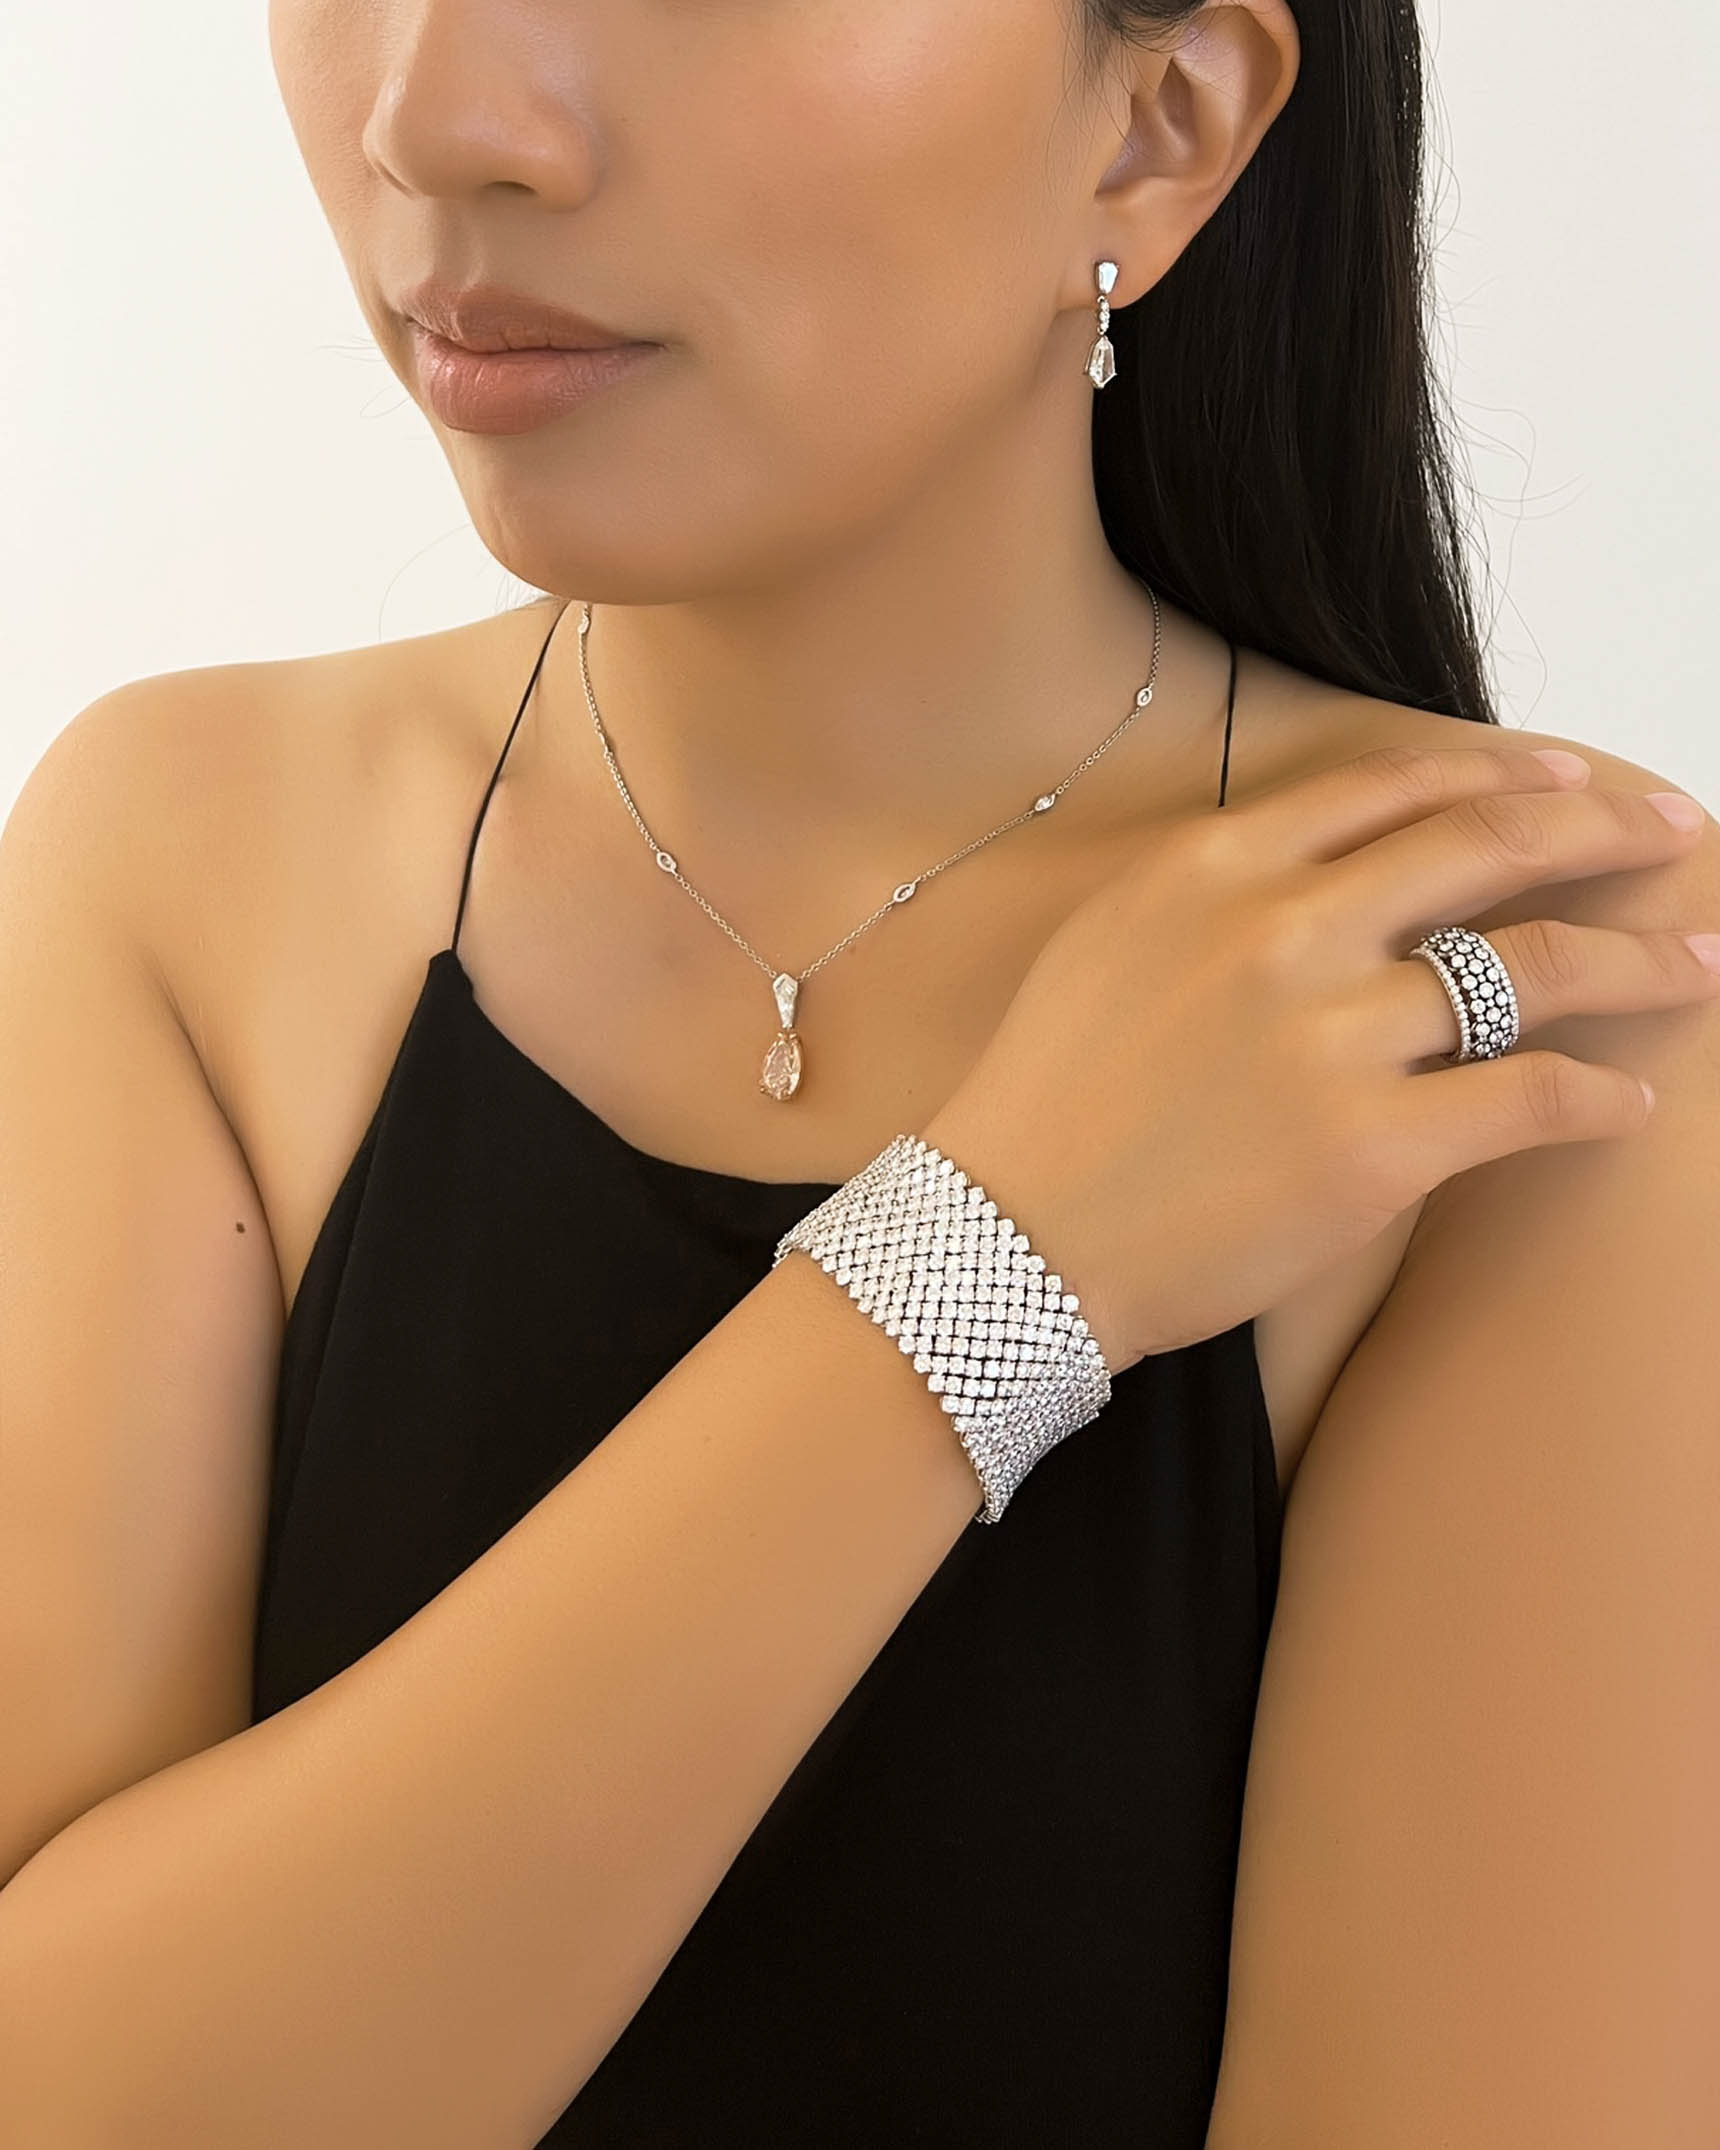 Diamond Earrings_Necklace_Ring and Bracelet EDFKK03392 – PNMTG03089 – RADPL06610 – BDOTK03187